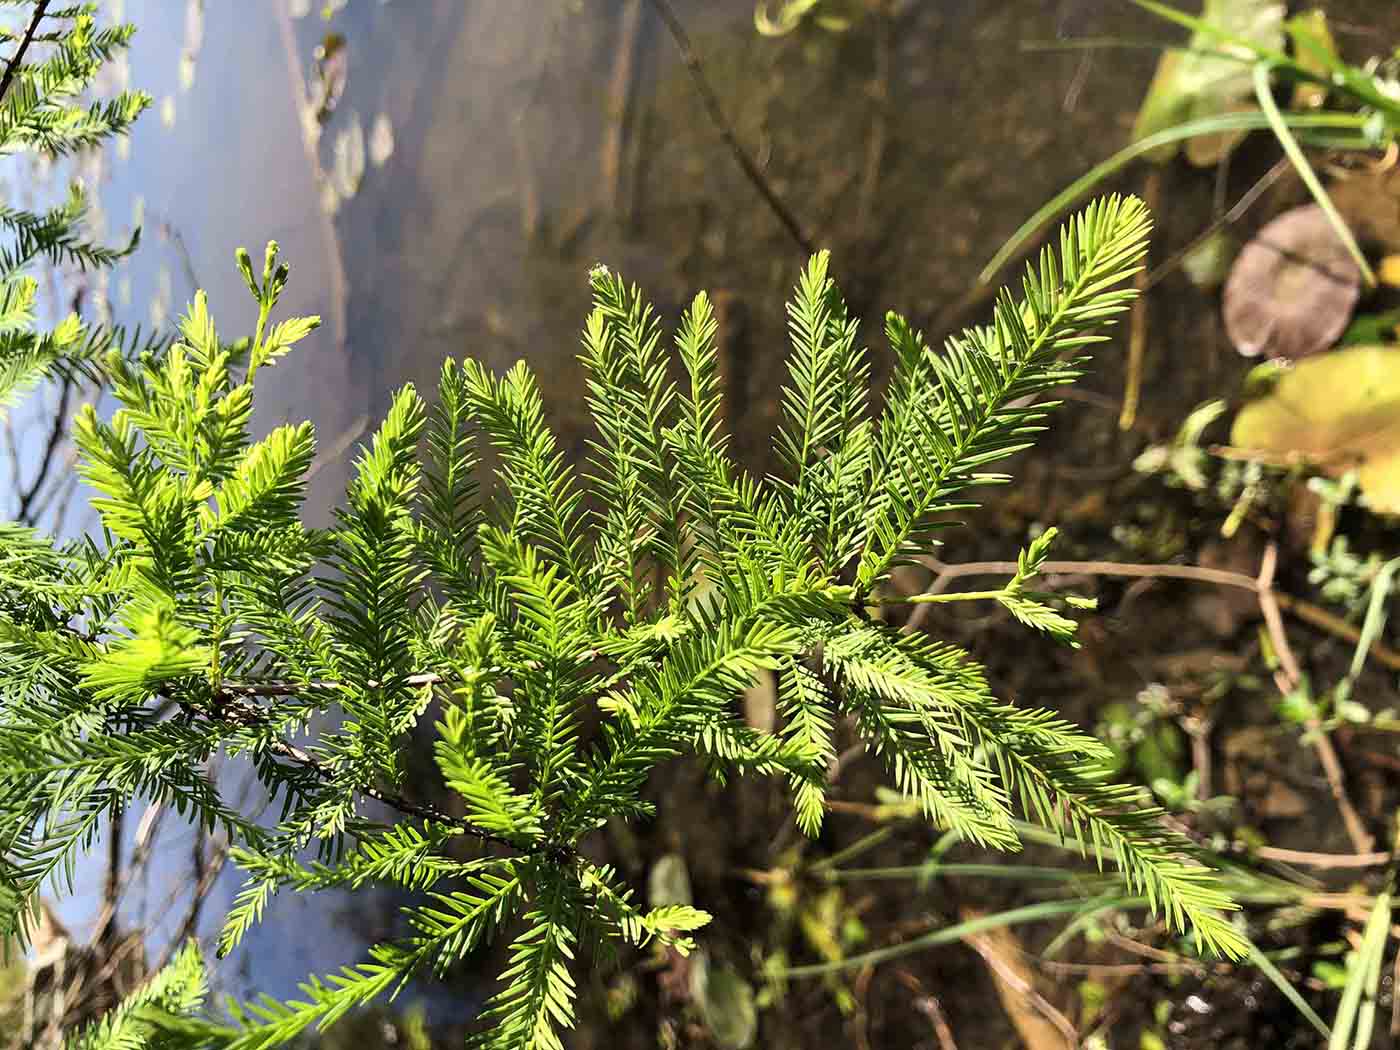 Bald cypress foliage